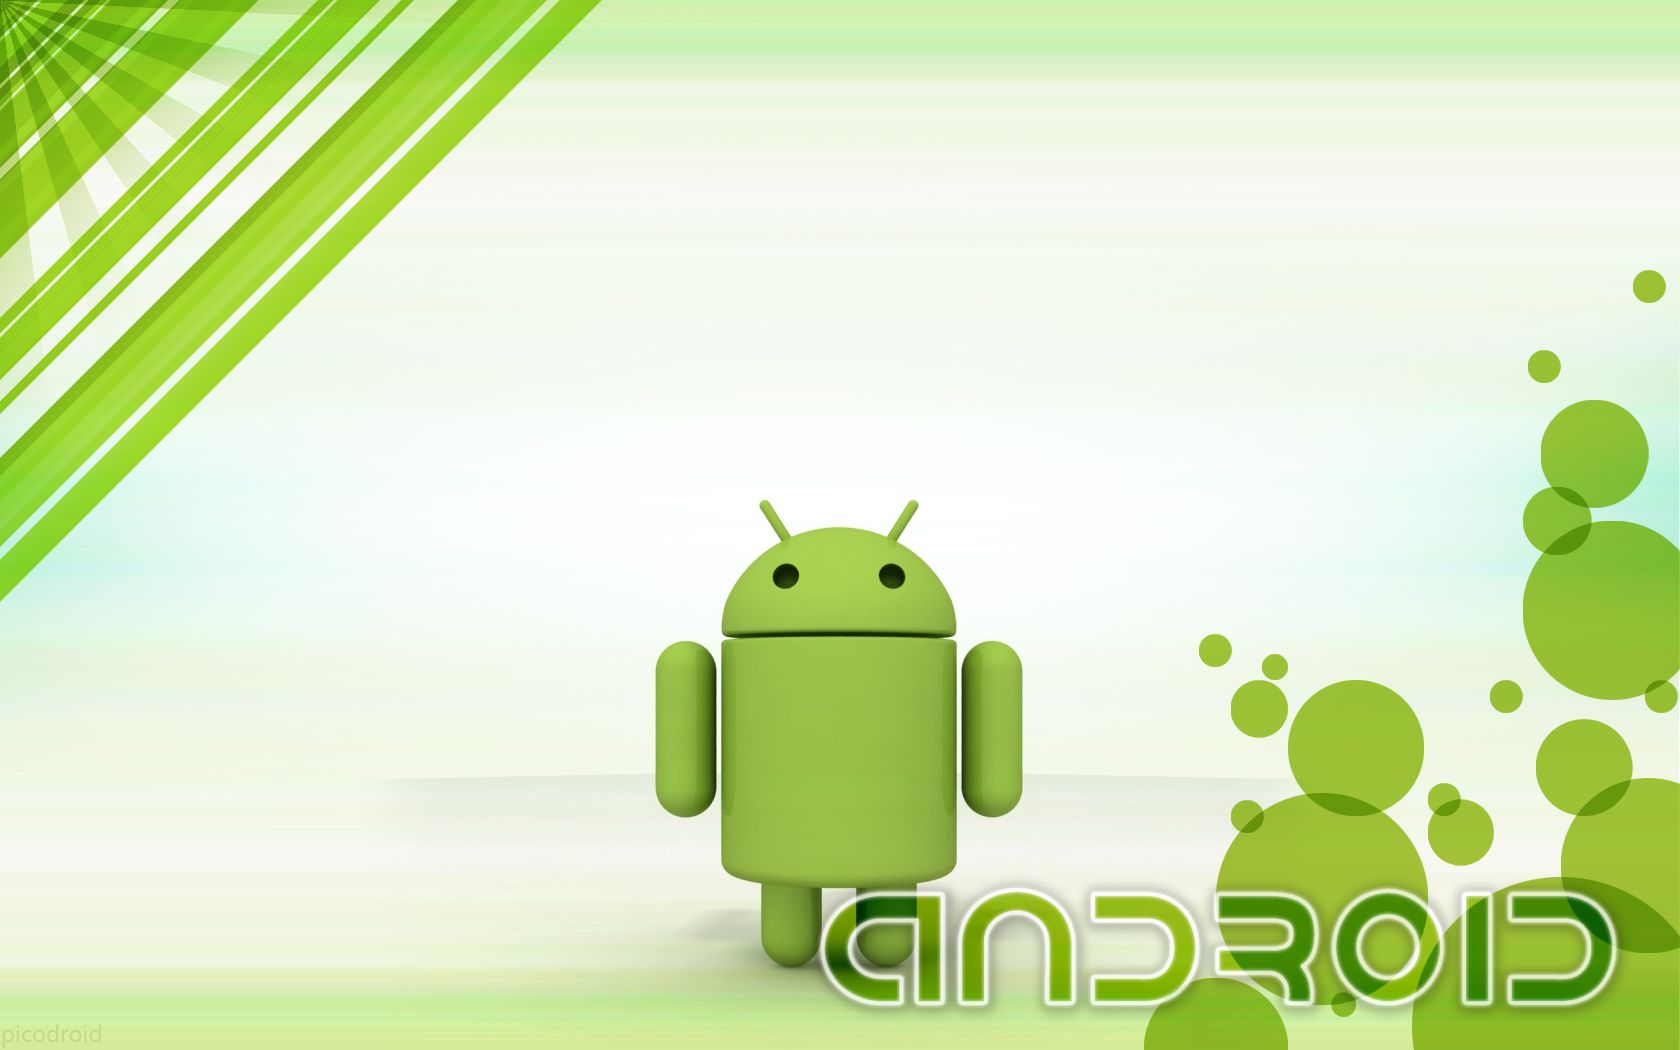 fond d'écran hidup untuk android,vert,feuille,illustration,la technologie,animation